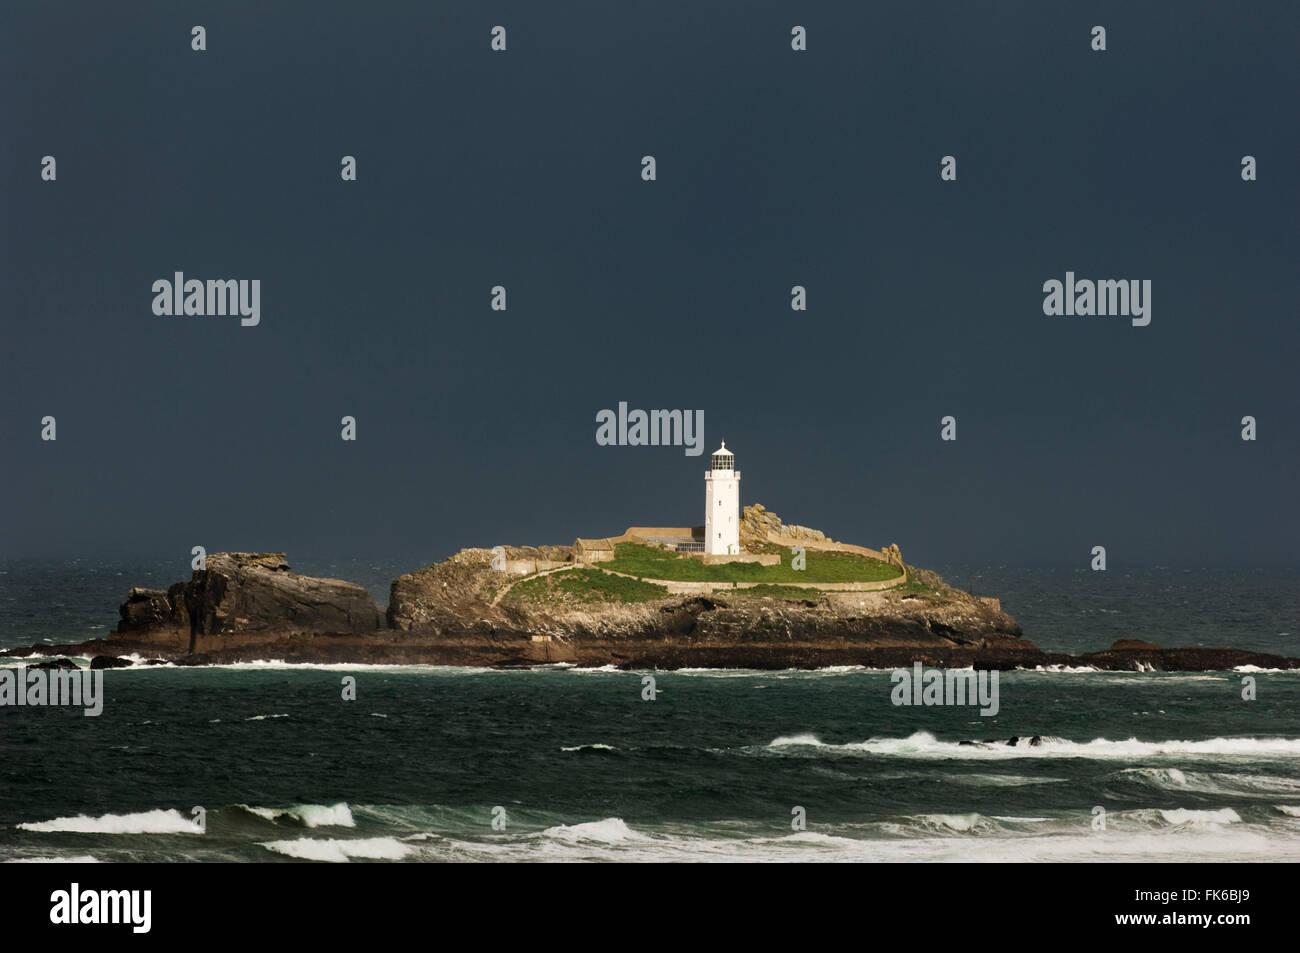 Godrevy Island and lighthouse, Cornwall, England, United Kingodm, Europe Stock Photo